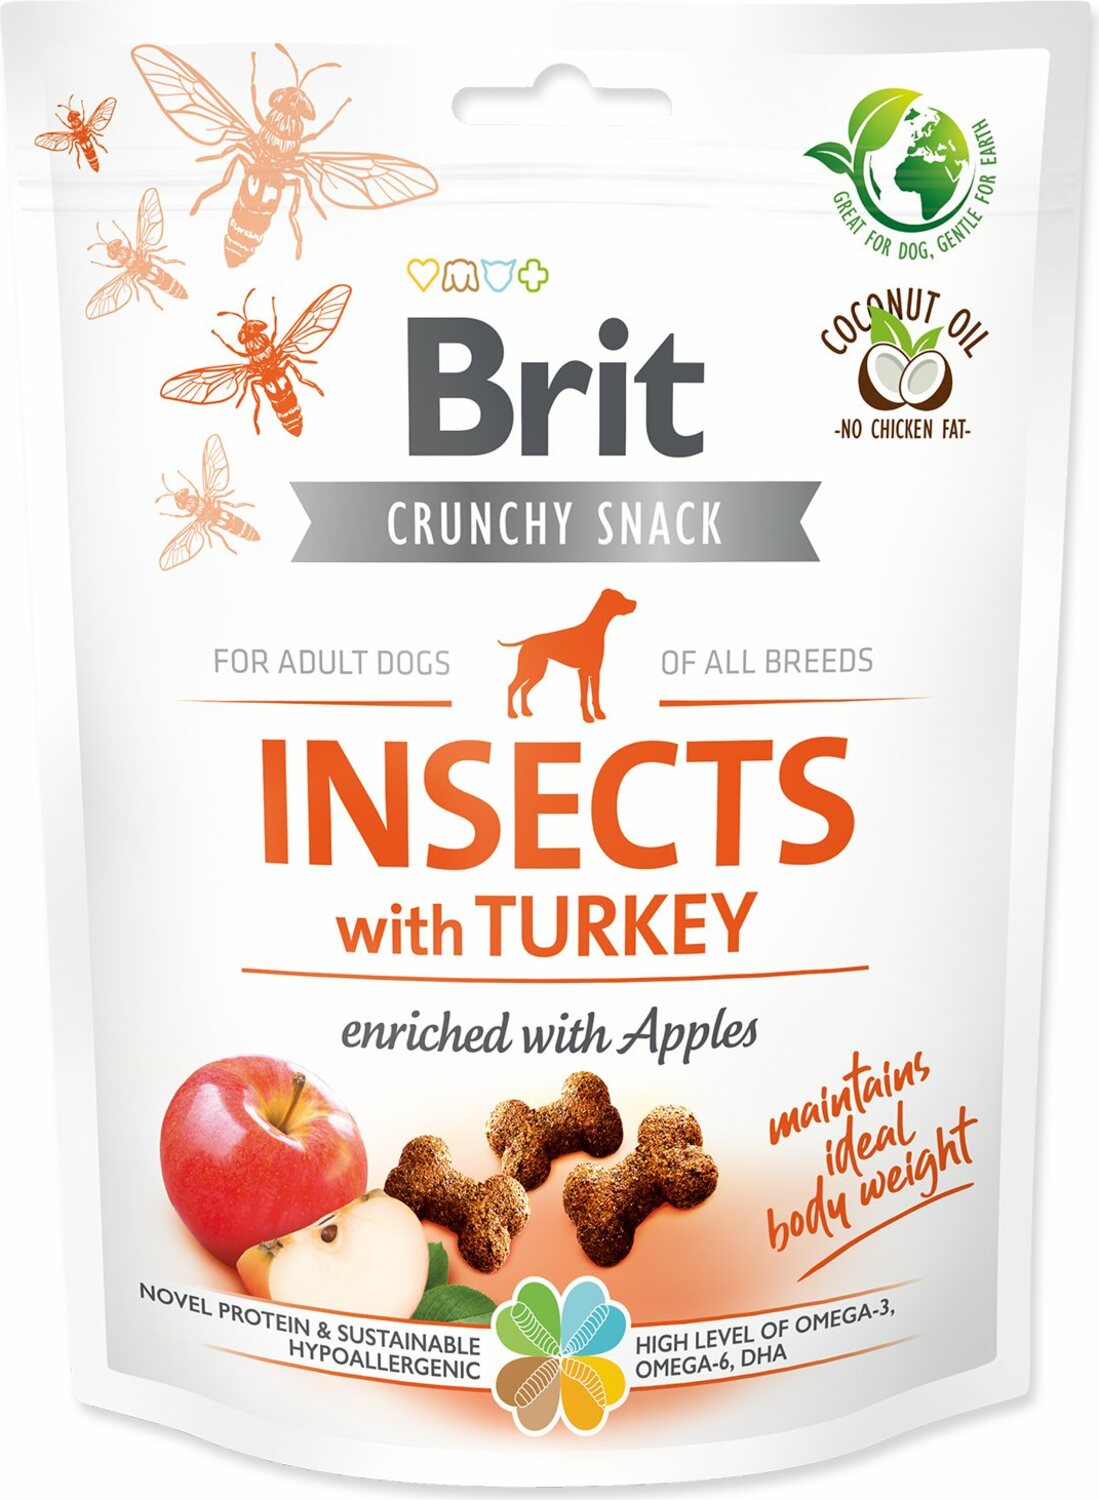 Pochoutka Brit Care Dog Crunchy Cracker Insocts, krůta s jablky 200g